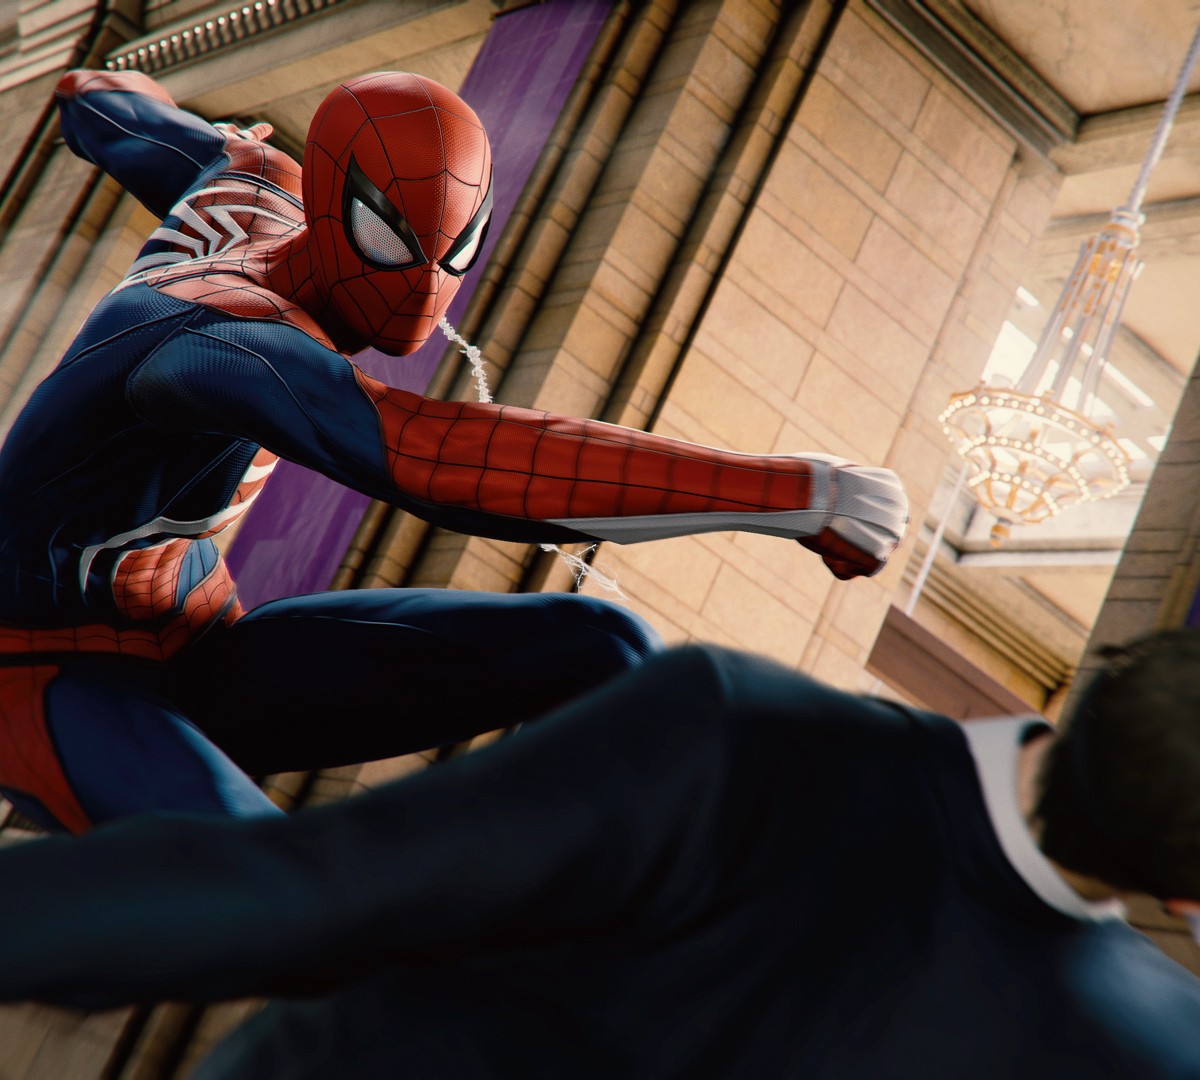 Marvel's Spider-Man revela recursos exclusivos do PC, requisitos  recomendados e inicia sua pré-venda